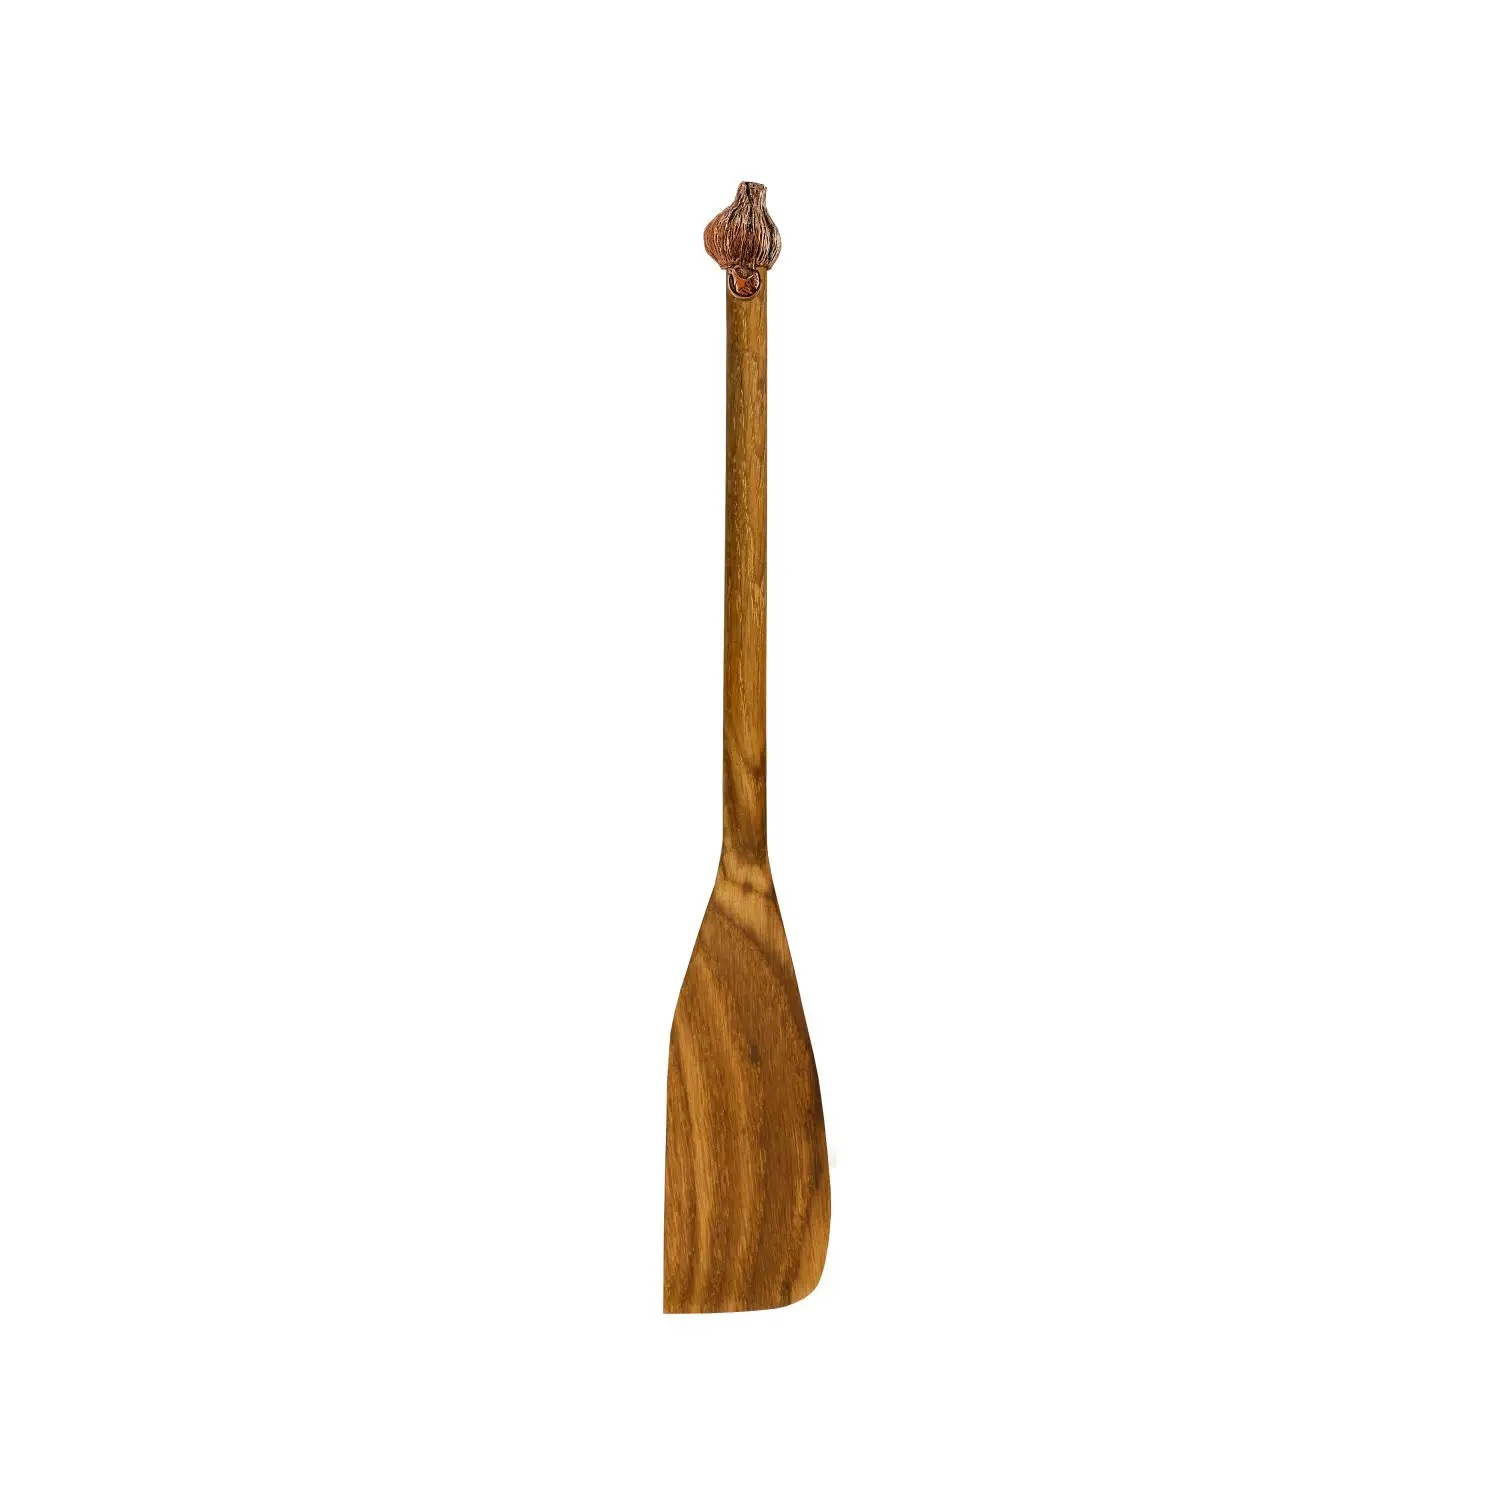 Узкая деревянная лопатка Чеснок с медной накладкой 